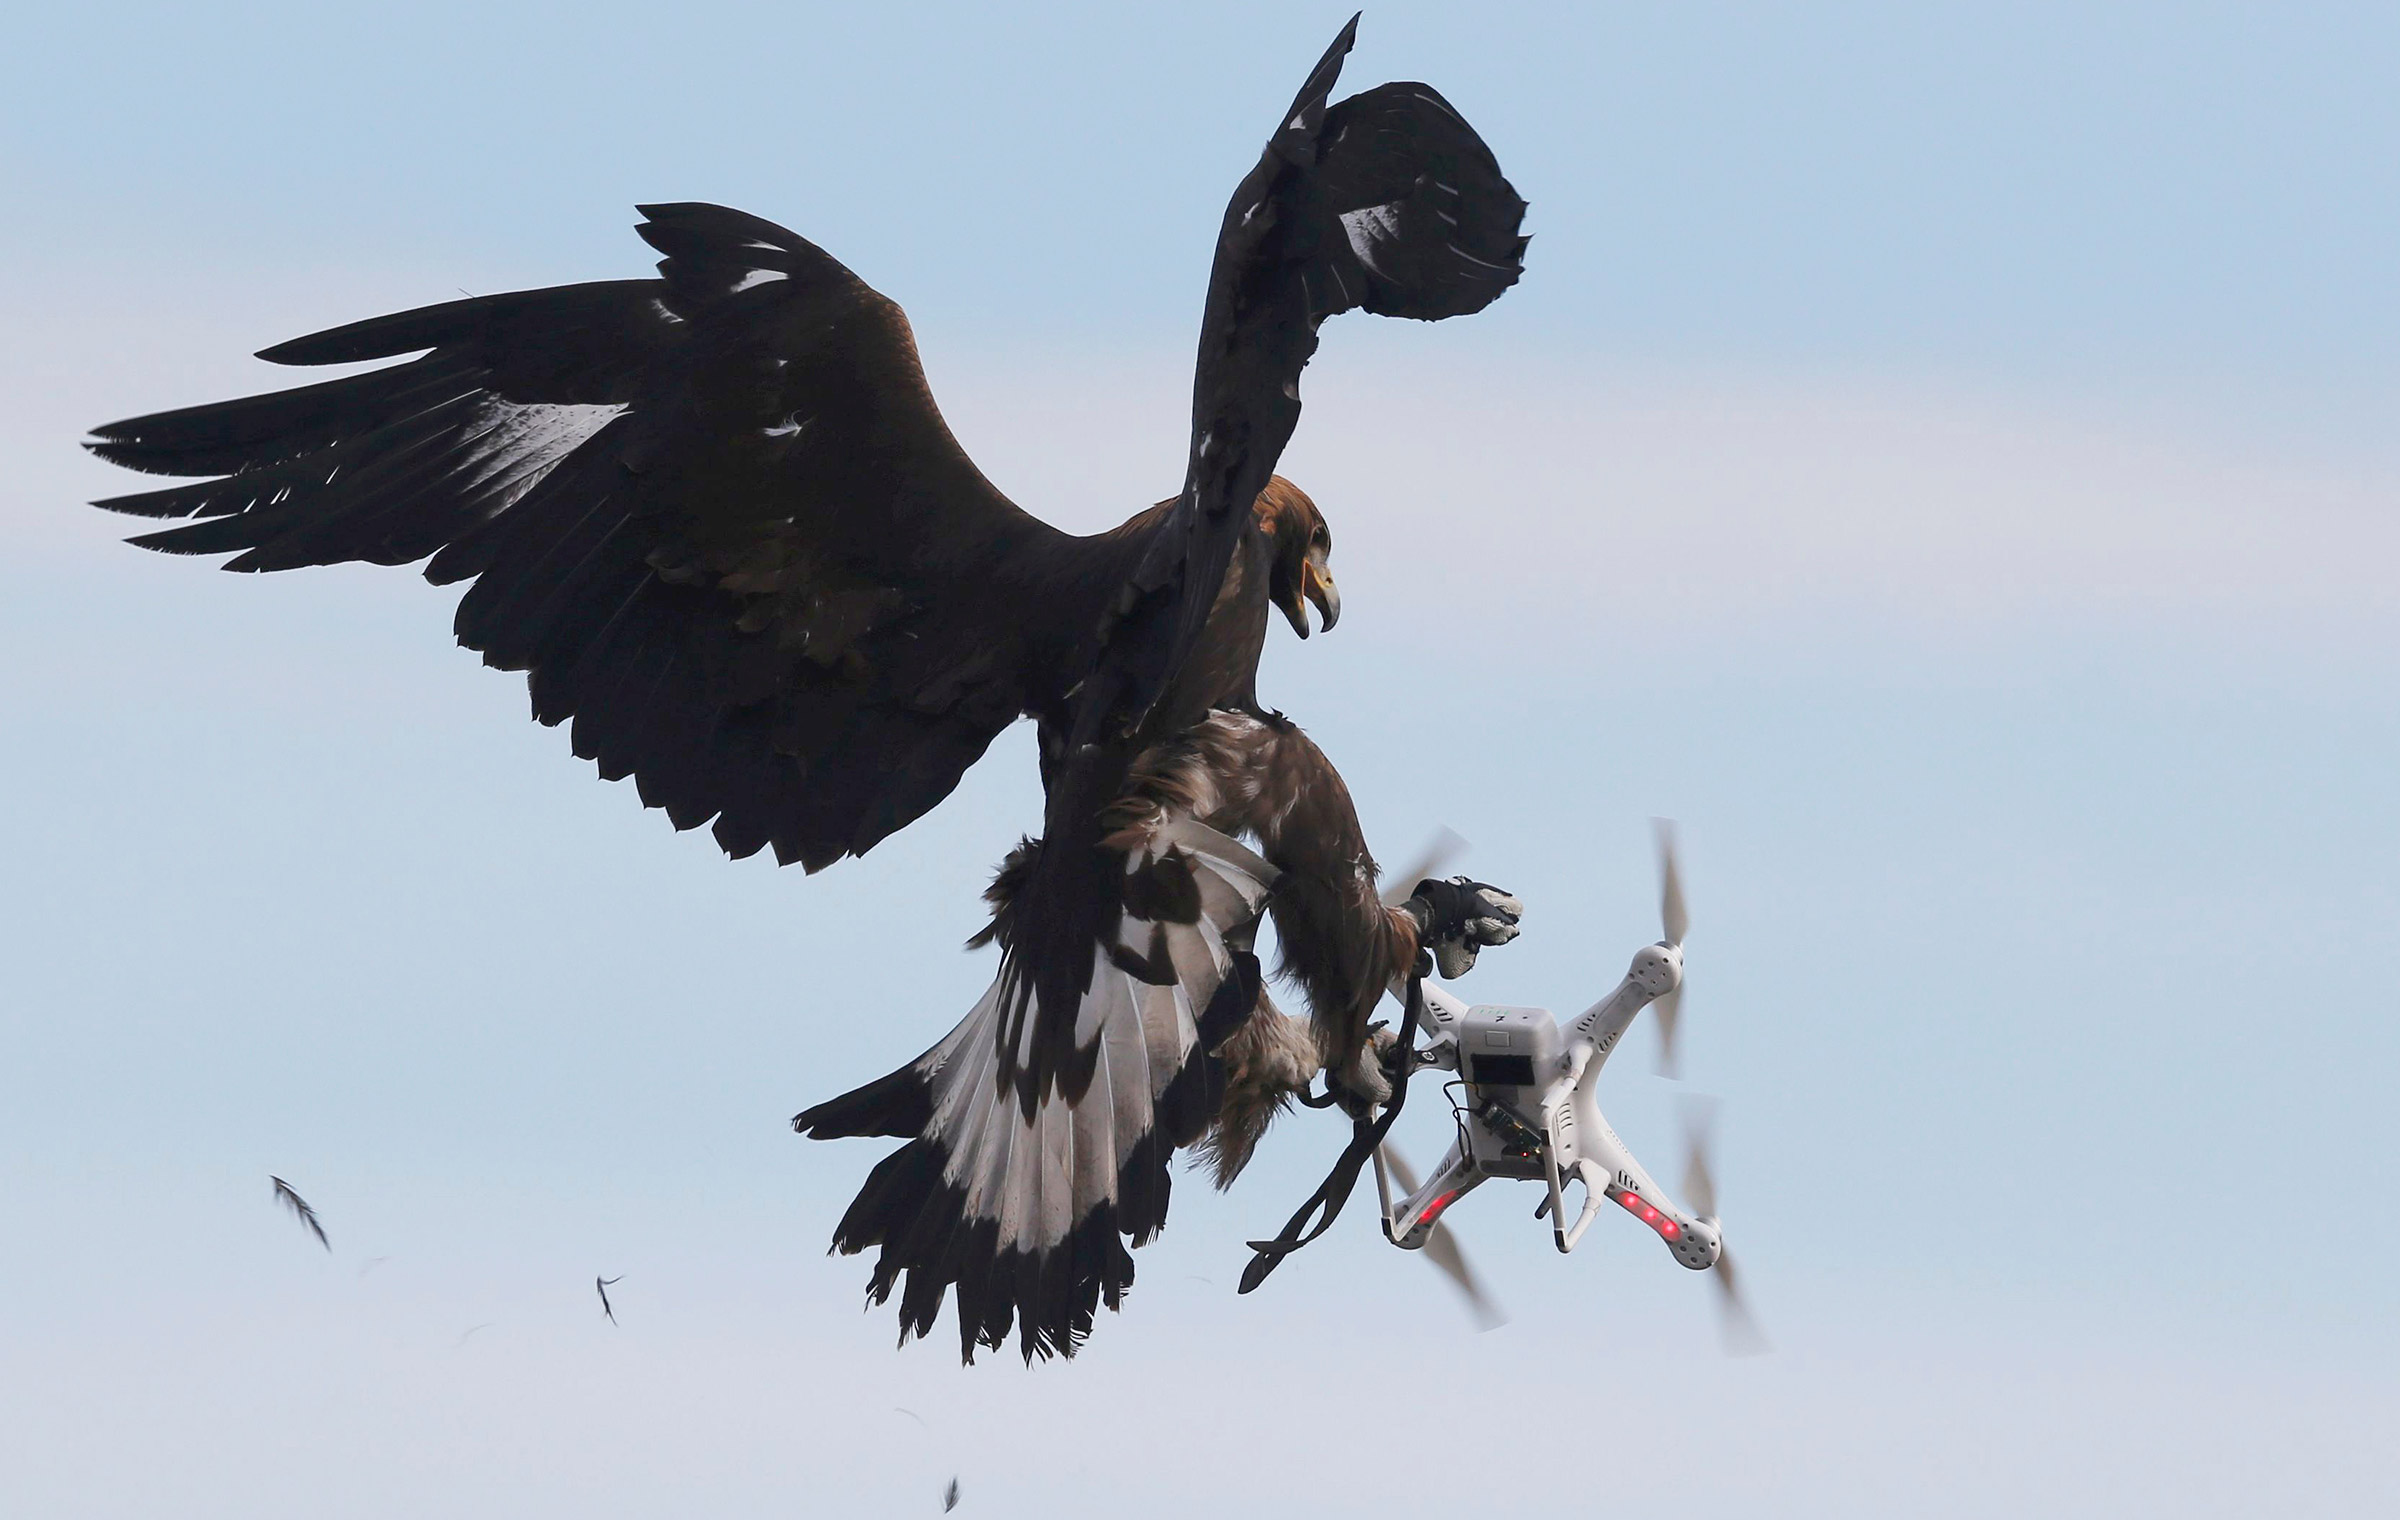 Февраль. Орел схватил дрон во время военных учений на базе ВВС Франции в Мон-де-Марсан. Франция
